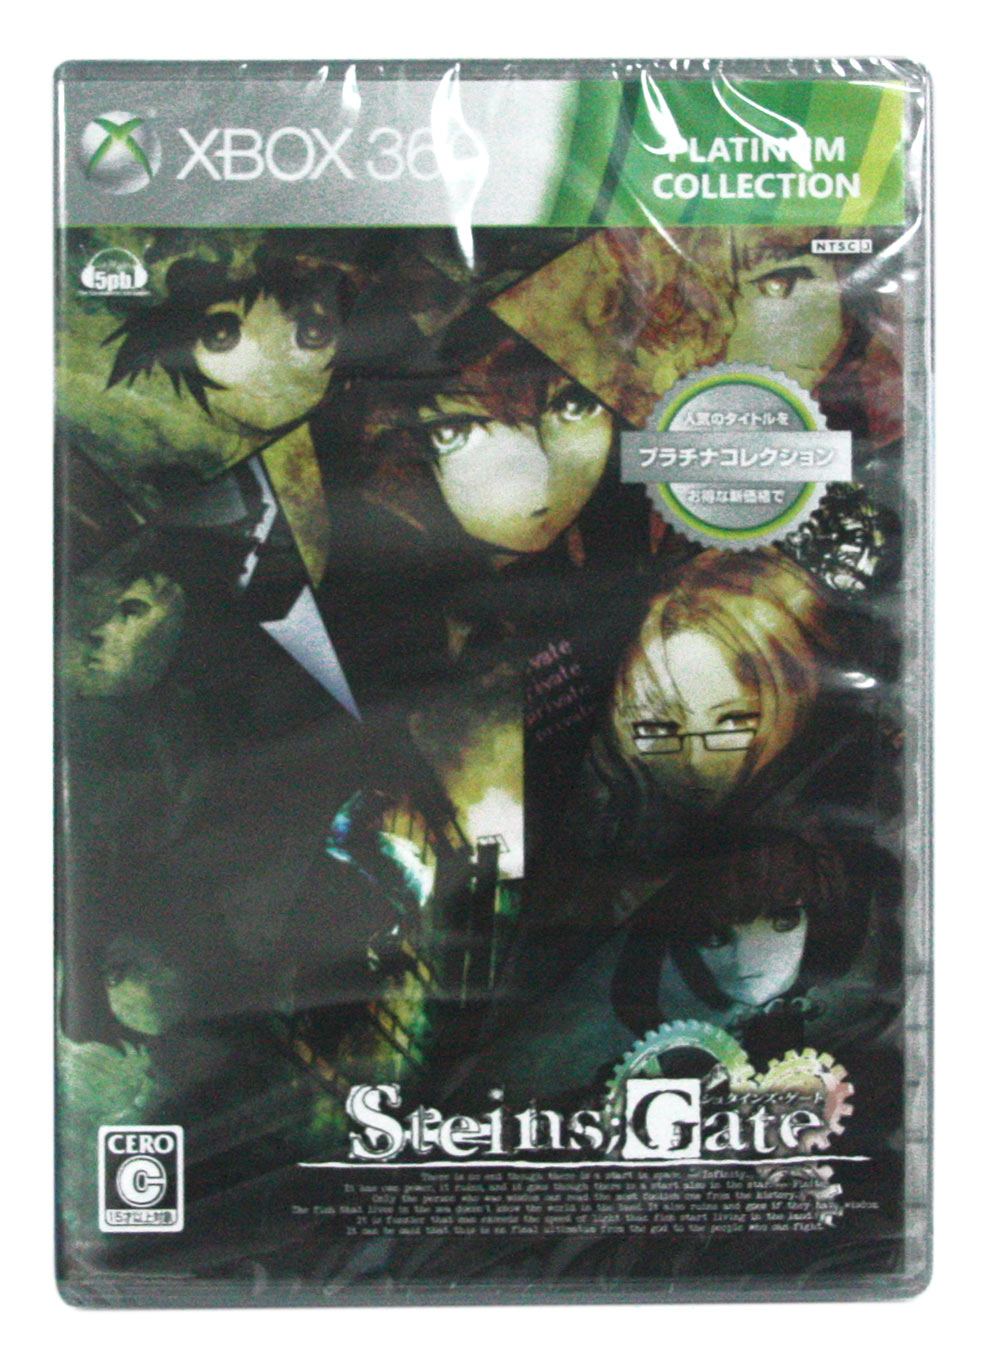 Steins;Gate (Platinum Collection) (Japan)